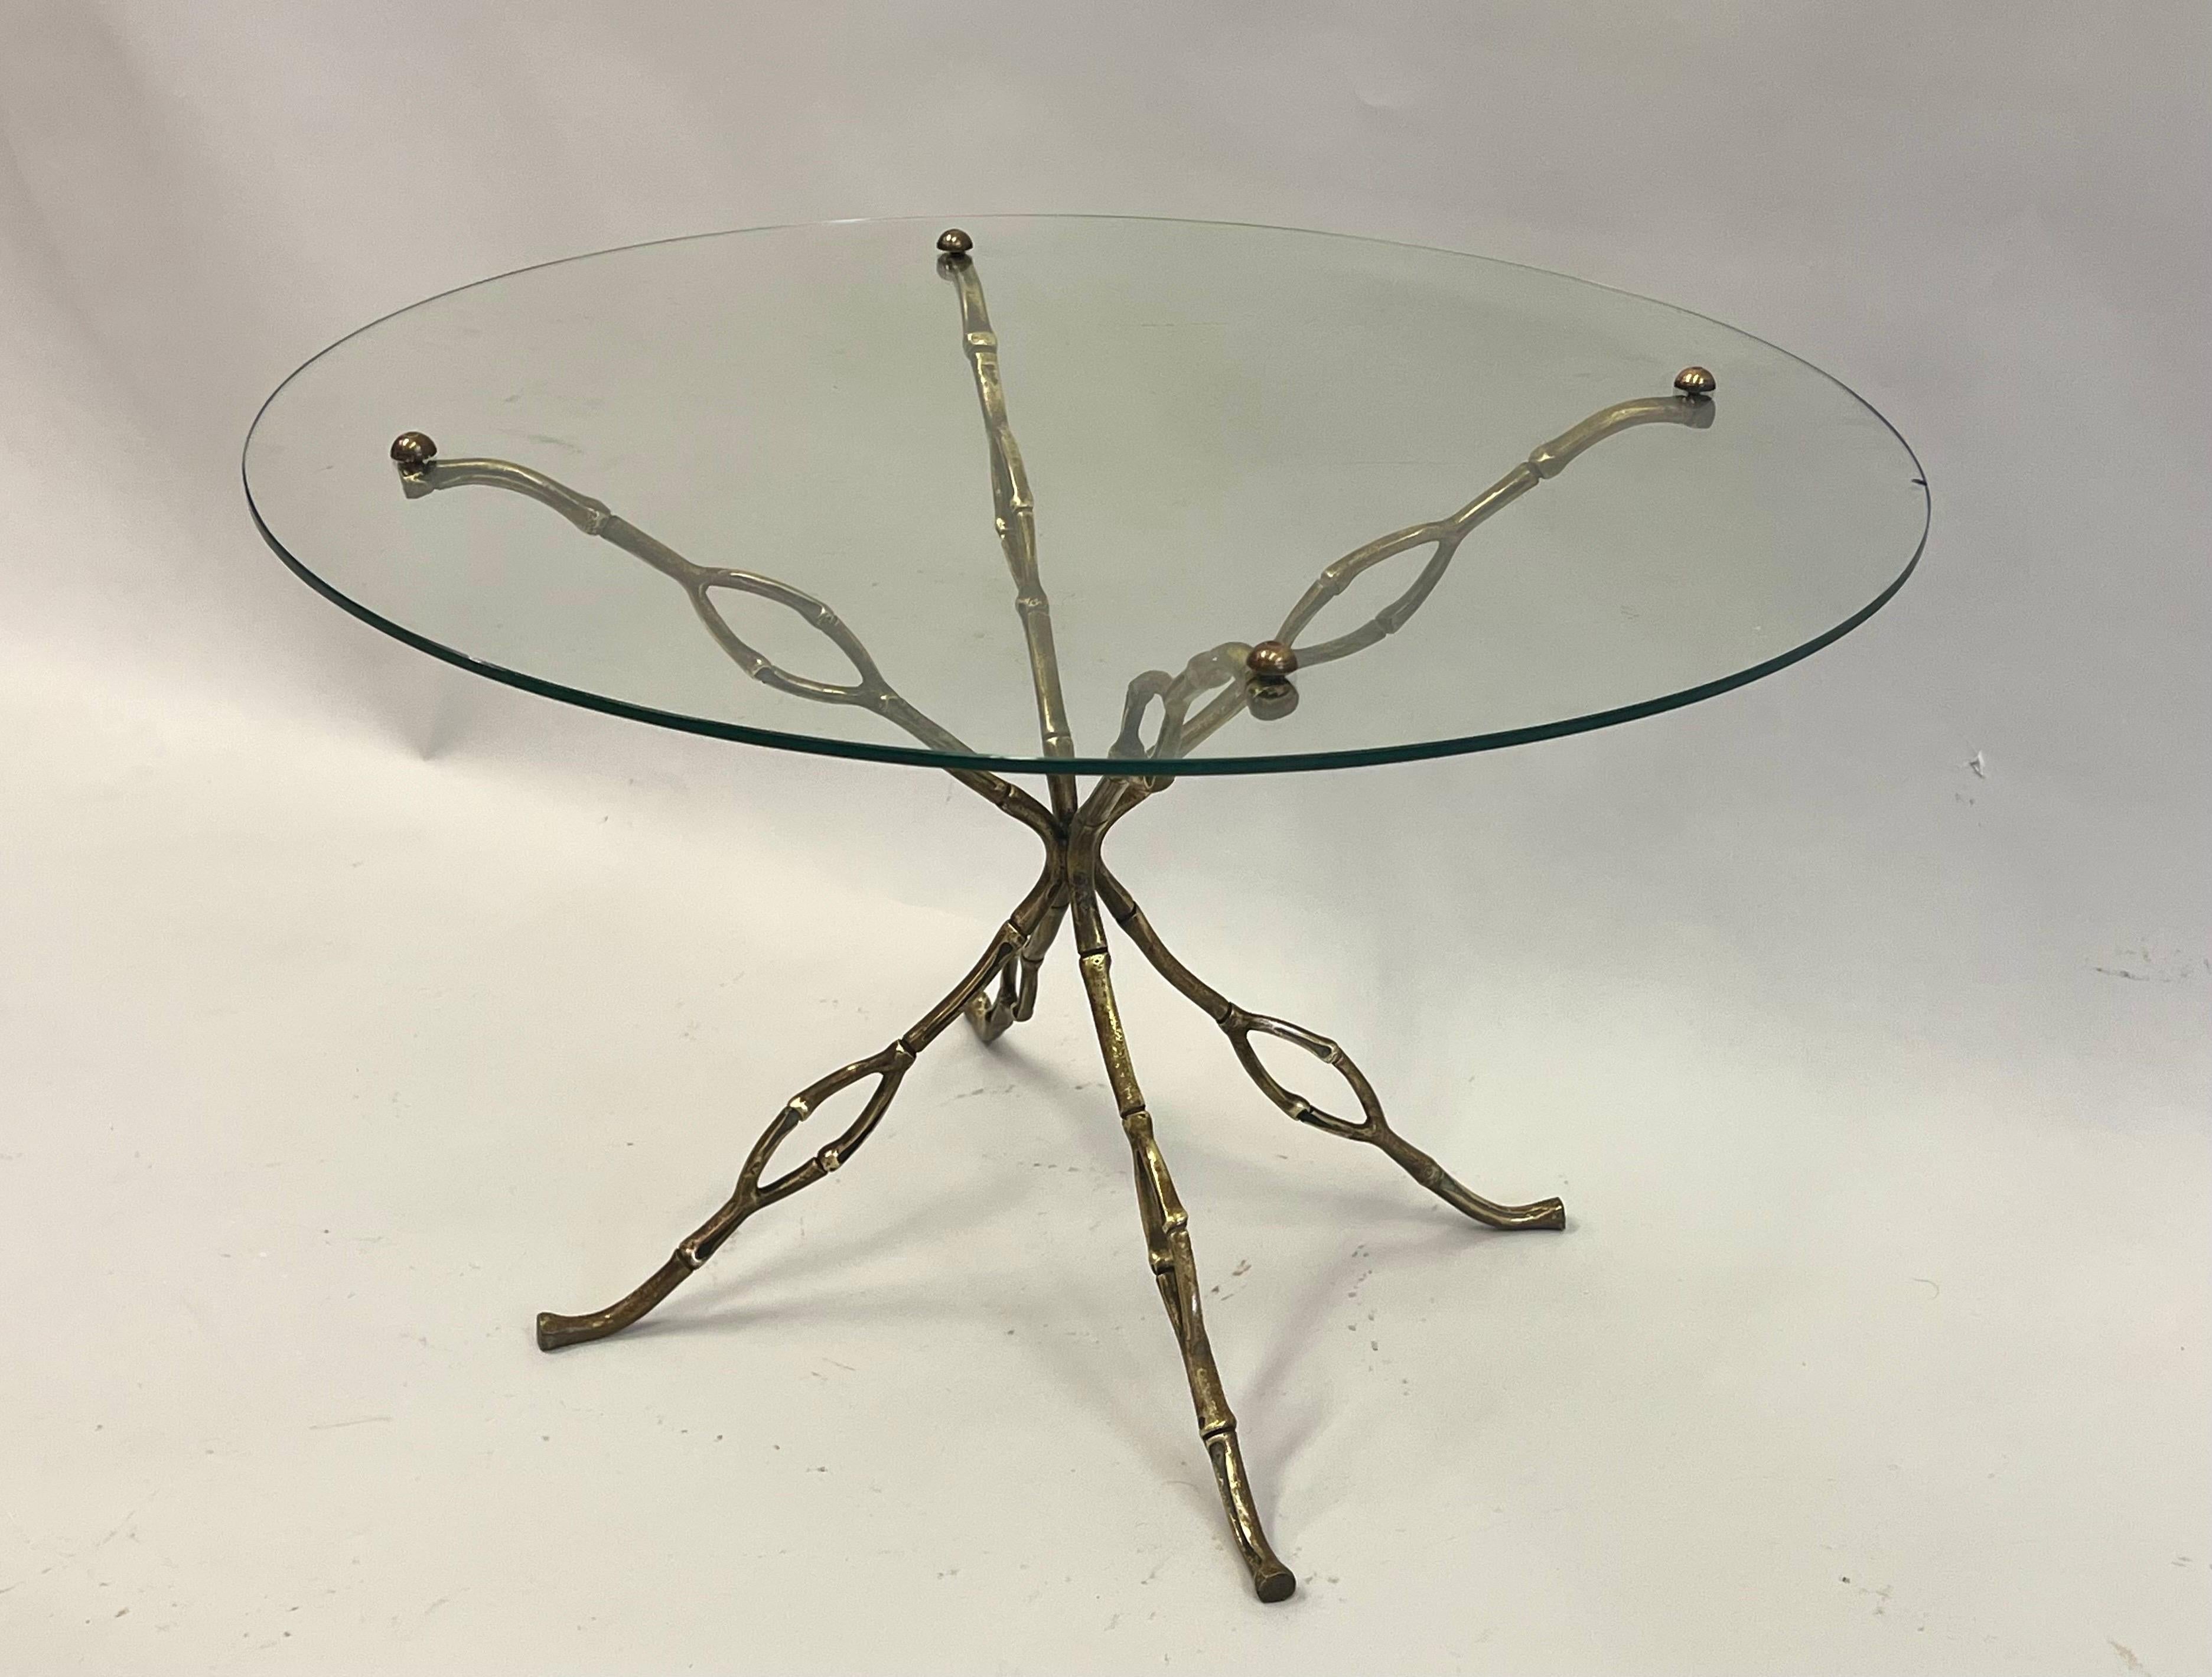 Unique et rare table d'appoint ou table basse française du milieu du siècle dans la tradition de l'artisanat moderne. Il s'agit d'une table prototype qui n'a jamais été produite et dont la forme organique en laiton et en bronze doré est saisissante.